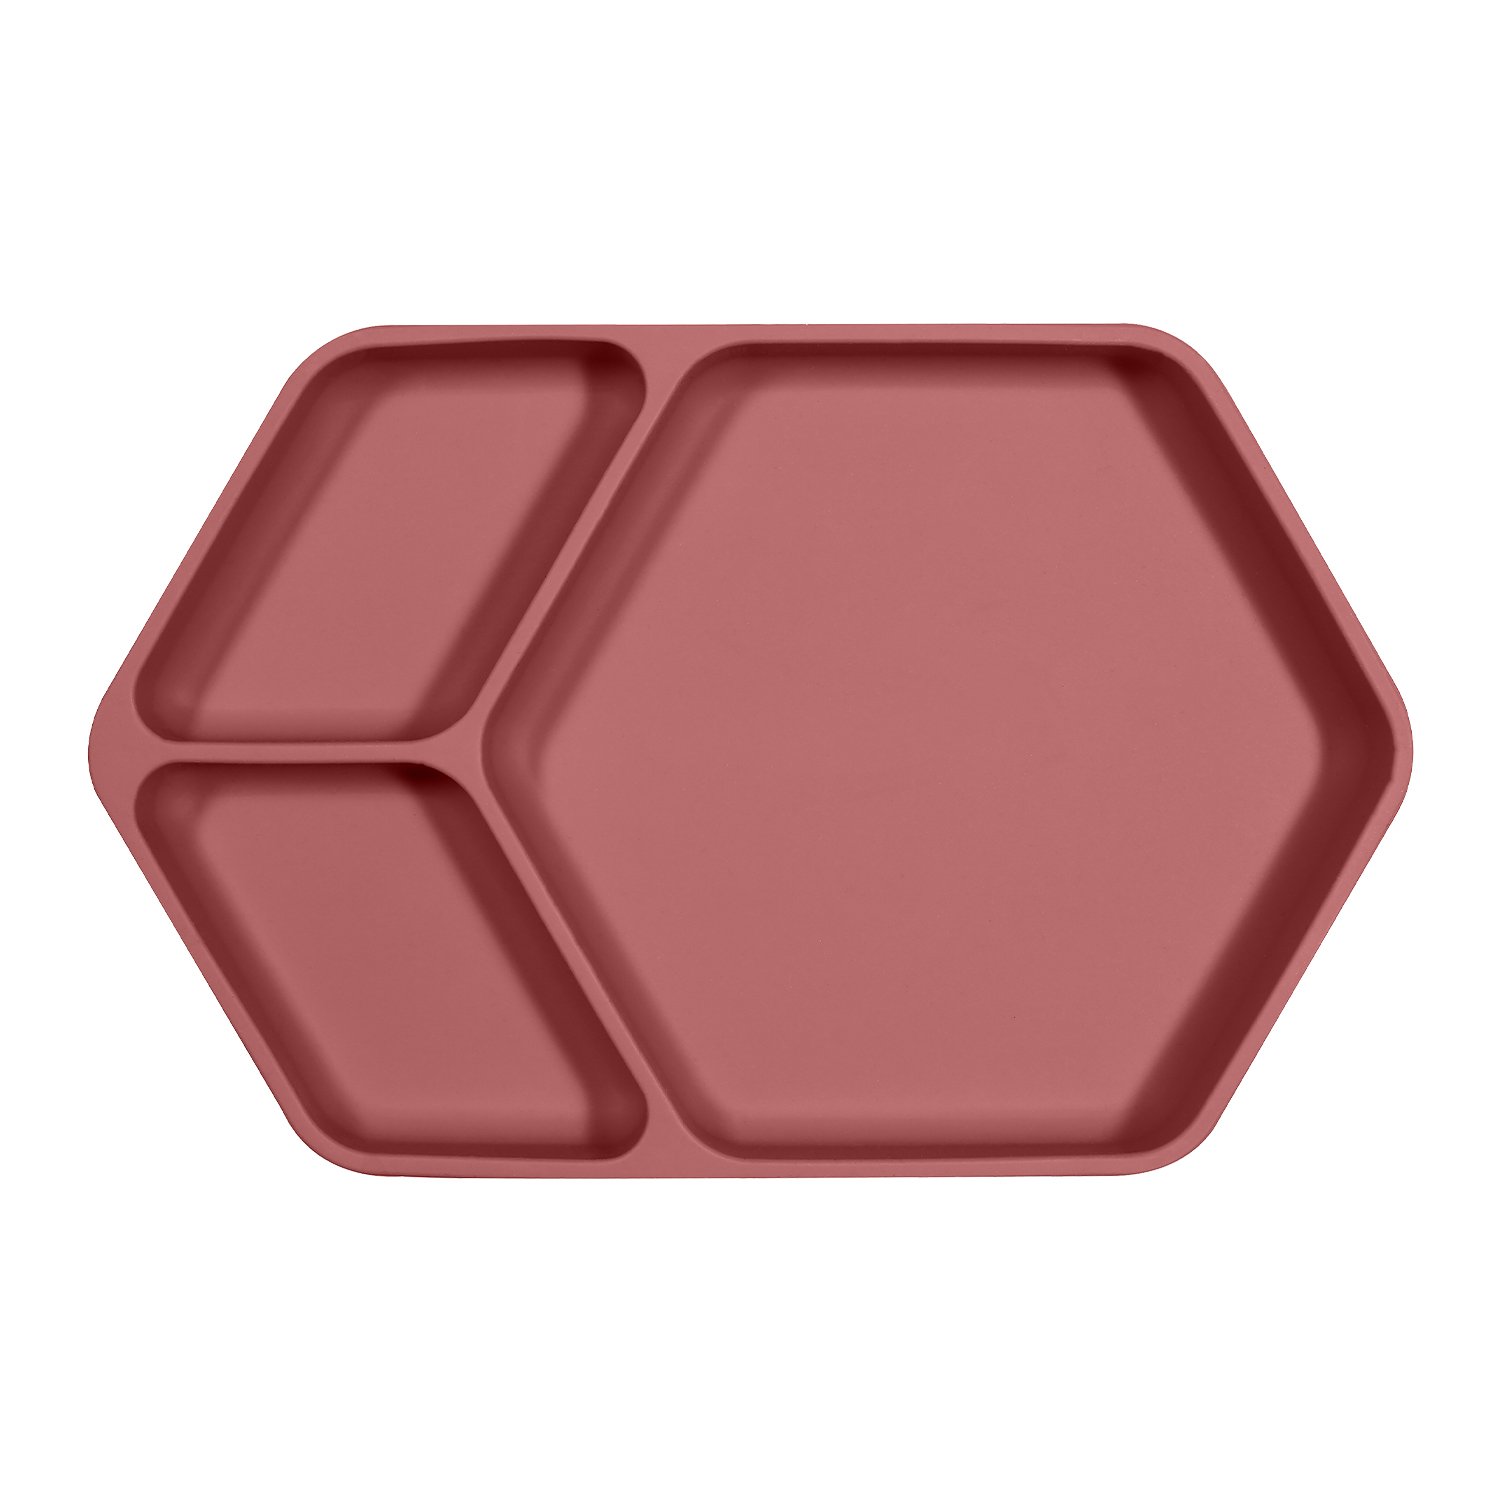 Assiette ventouse carré en silicone vieux rose